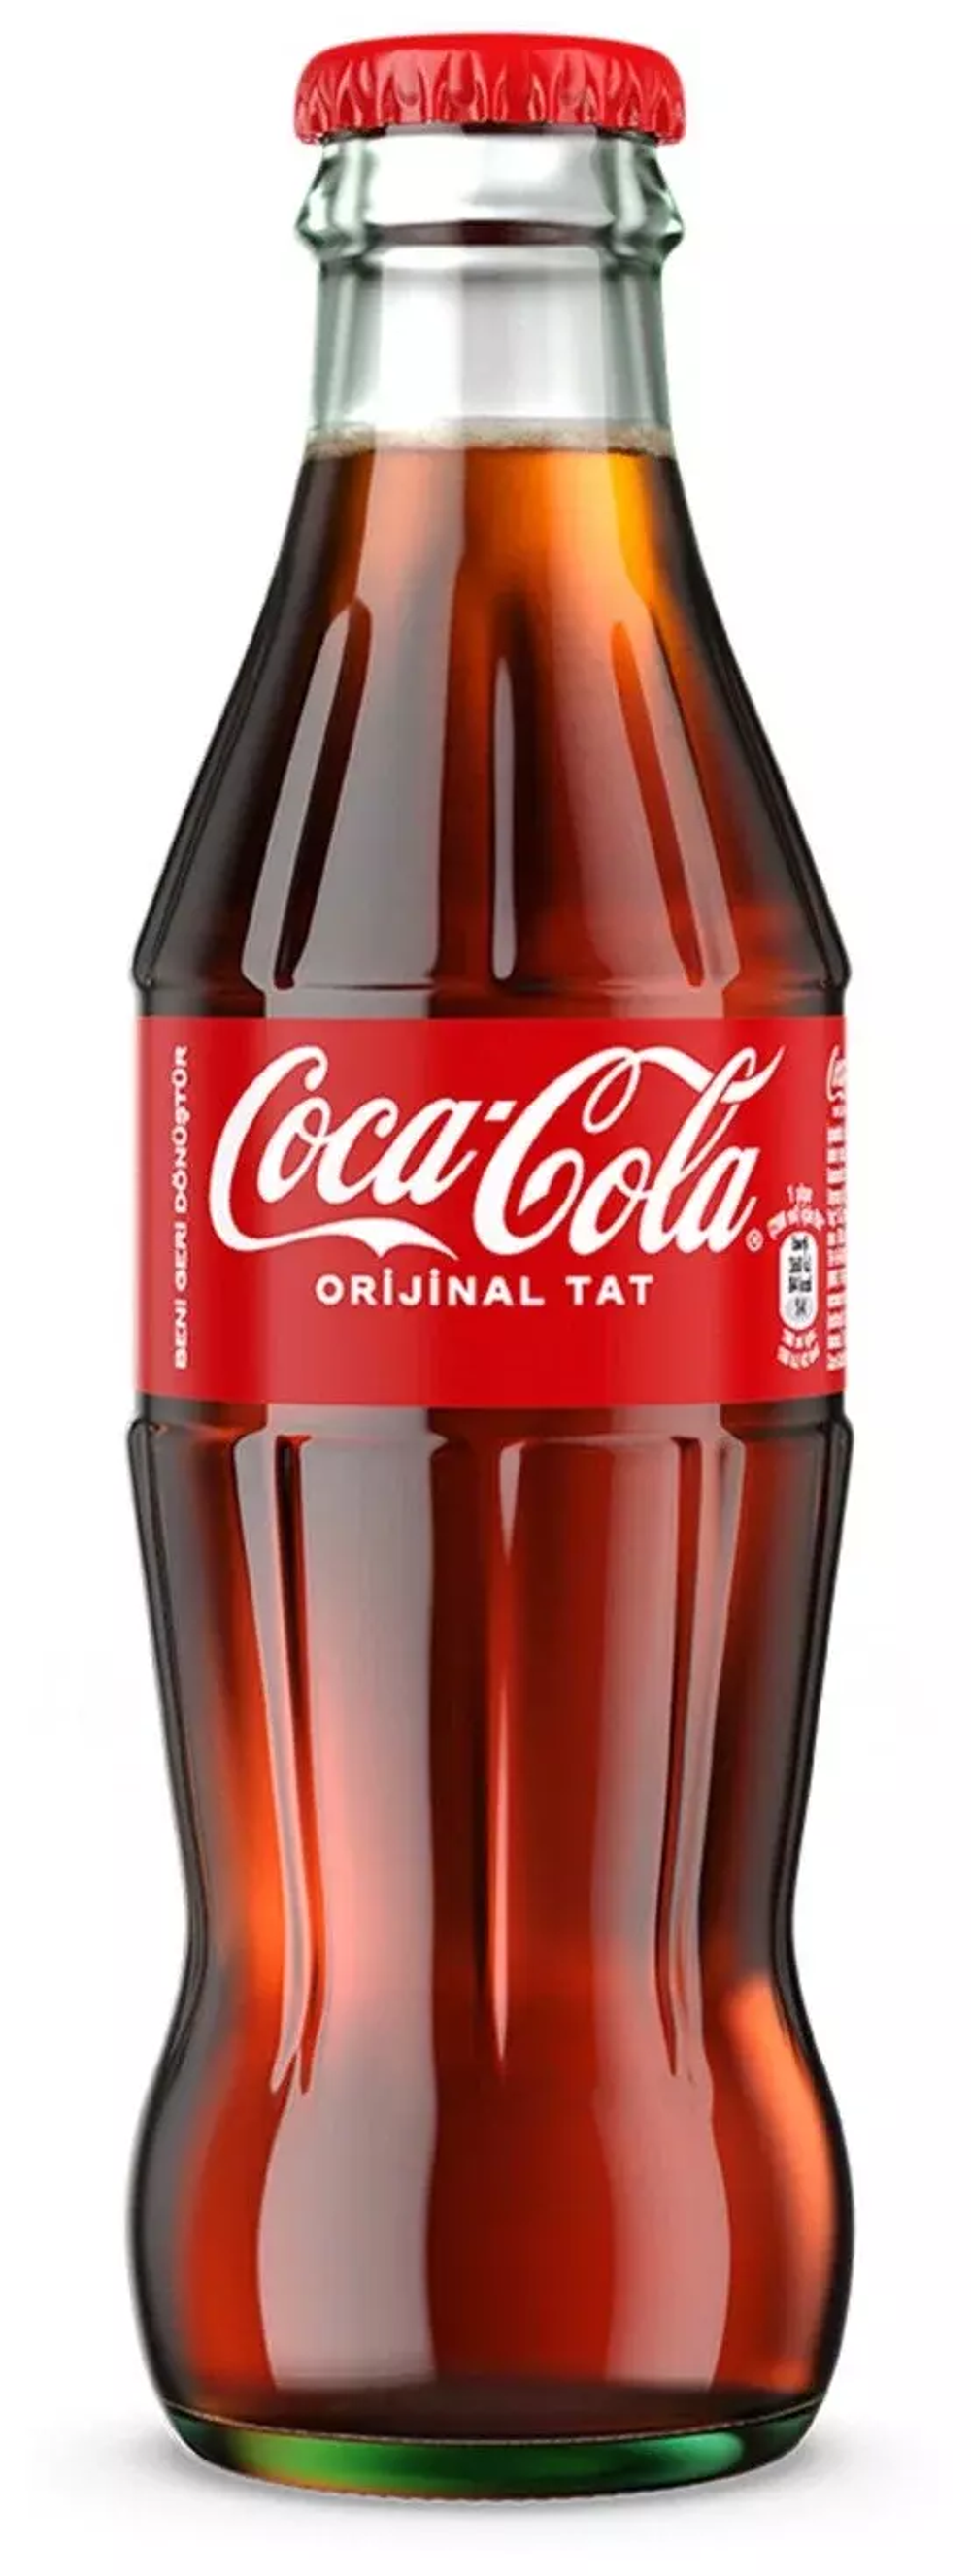 Газированный напиток Coca-Cola Classic, стекло, 0.25 л.12шт. в упаковке.Иран.